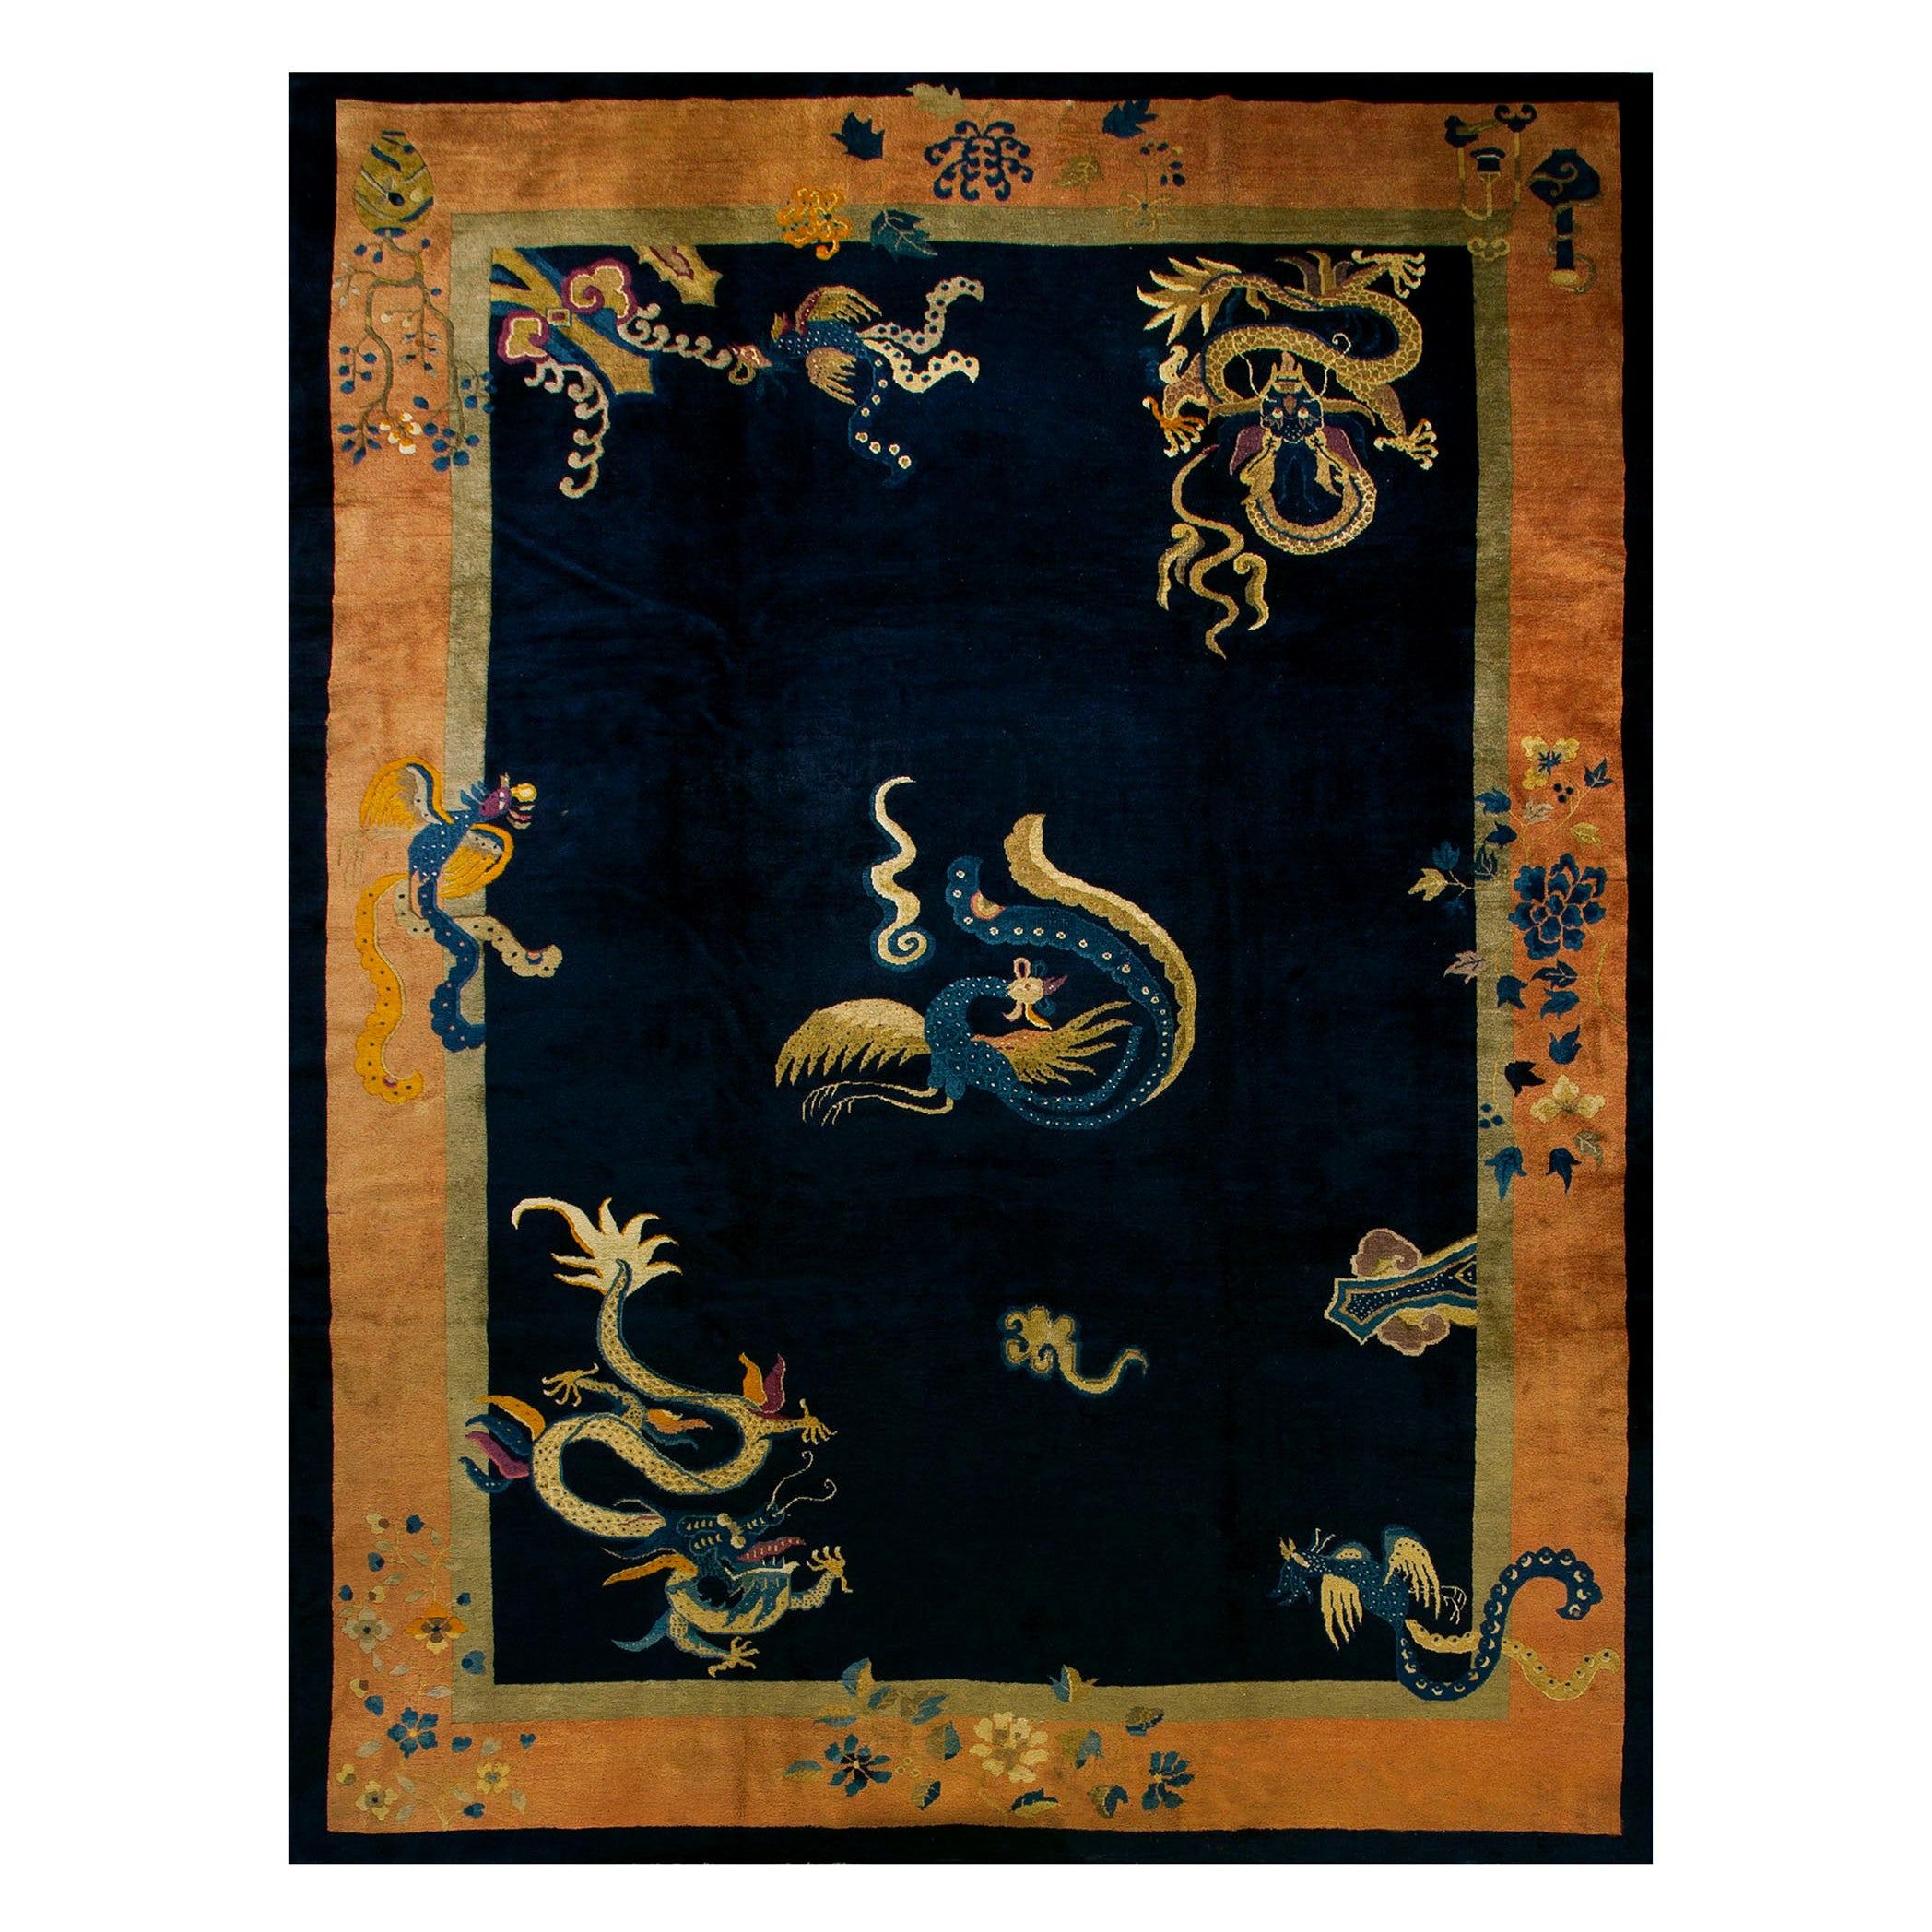 Chinesischer Peking-Teppich des späten 19. Jahrhunderts ( 10' 2'' x 13' 5'' - 310 x 410 cm)